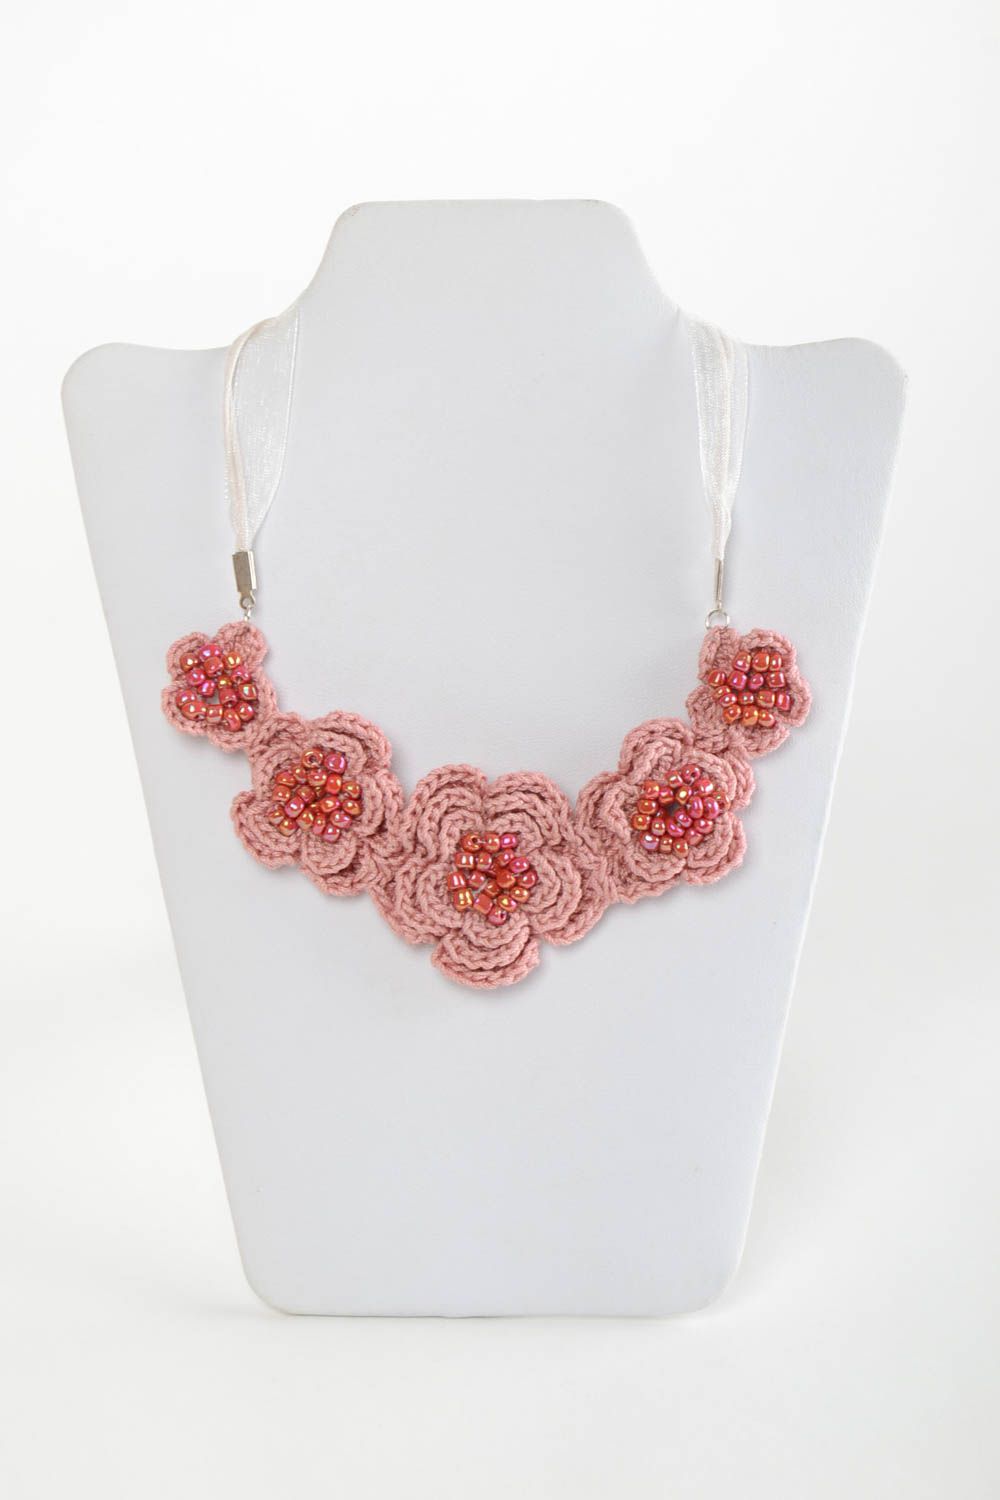 Textil Collier mit Blumen in Rosa gehäkelt mit Glasperlen handmade für Frauen foto 2